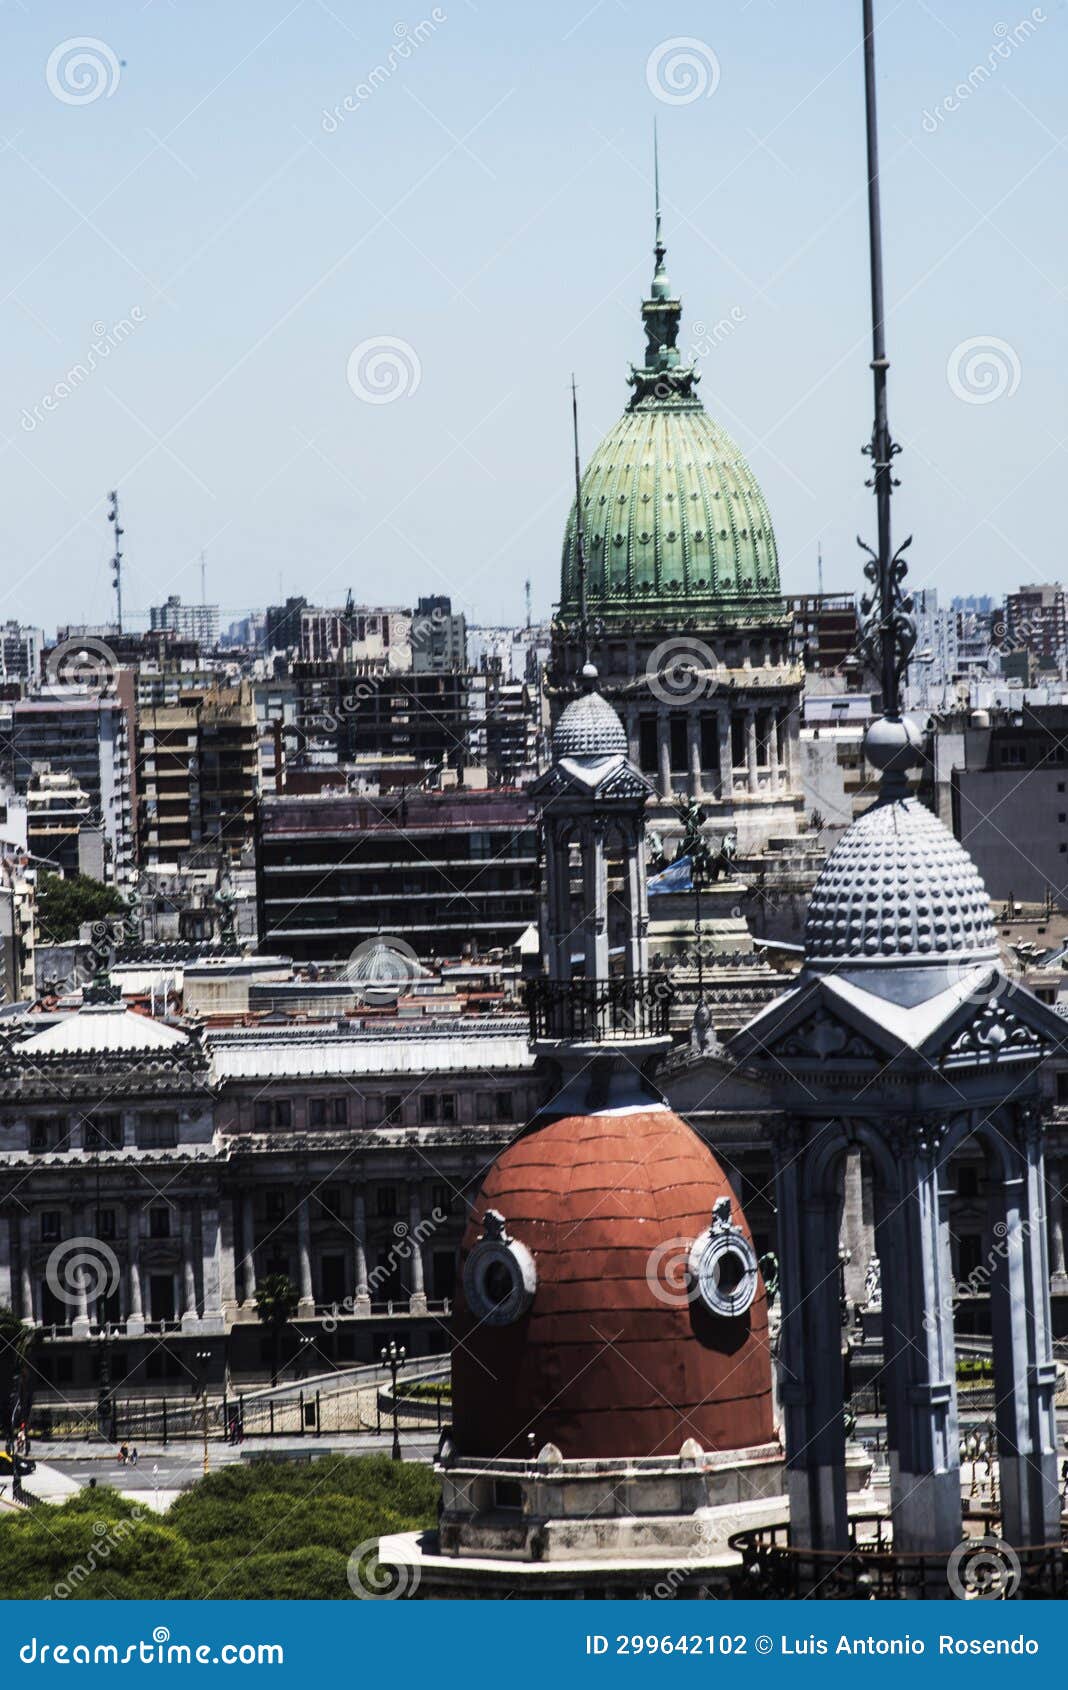 aerial view of buenos aires and plaza y congreso de la nacion with old domes in buenos aires, argentina